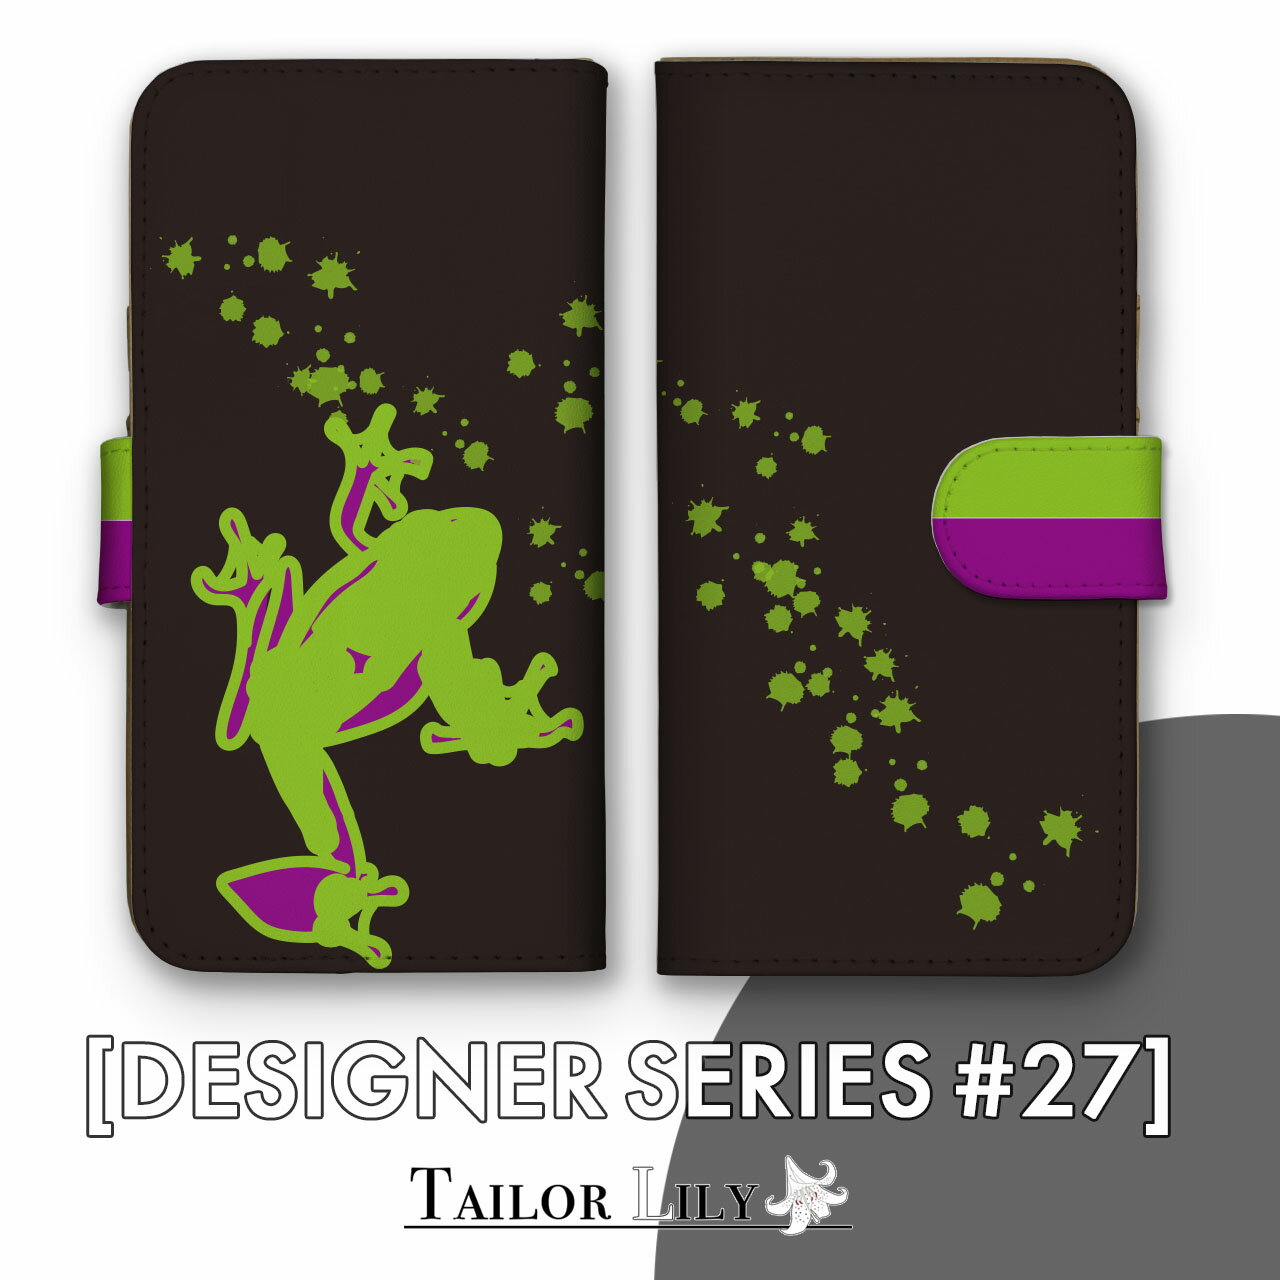 《DESIGNER SERIES #27》  全機種対応 カエル 爬虫類 個性的 くすみ 派手 シンプル 手帳ケース 手帳型 オリジナルデザイン Tailor Lily テイラーリリー iPhone Galaxy Xperia AQUOS